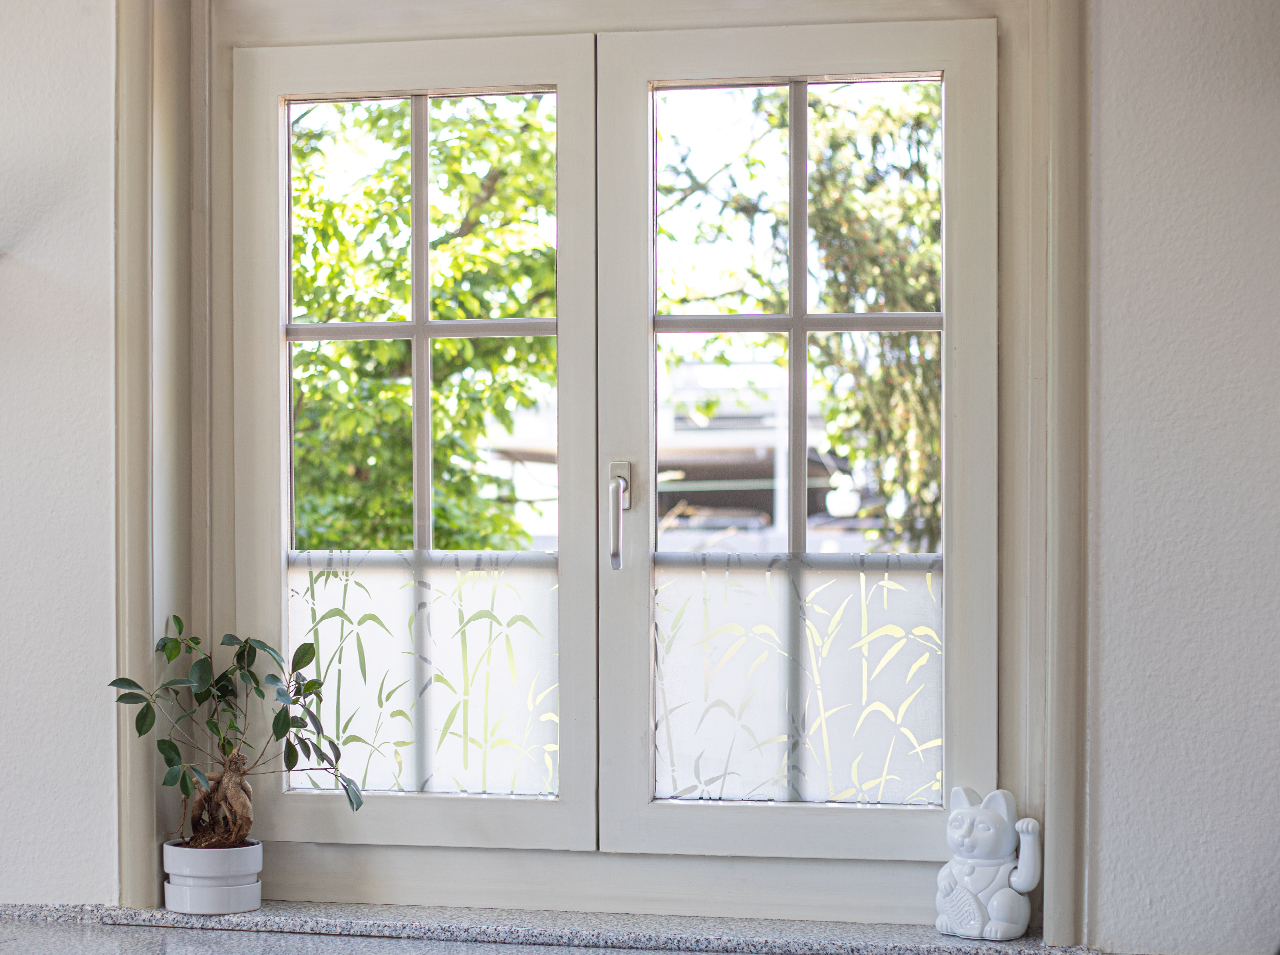 Окно, покрытое непрозрачной оконной пленкой с эффектом бамбука, обеспечивает уединение.